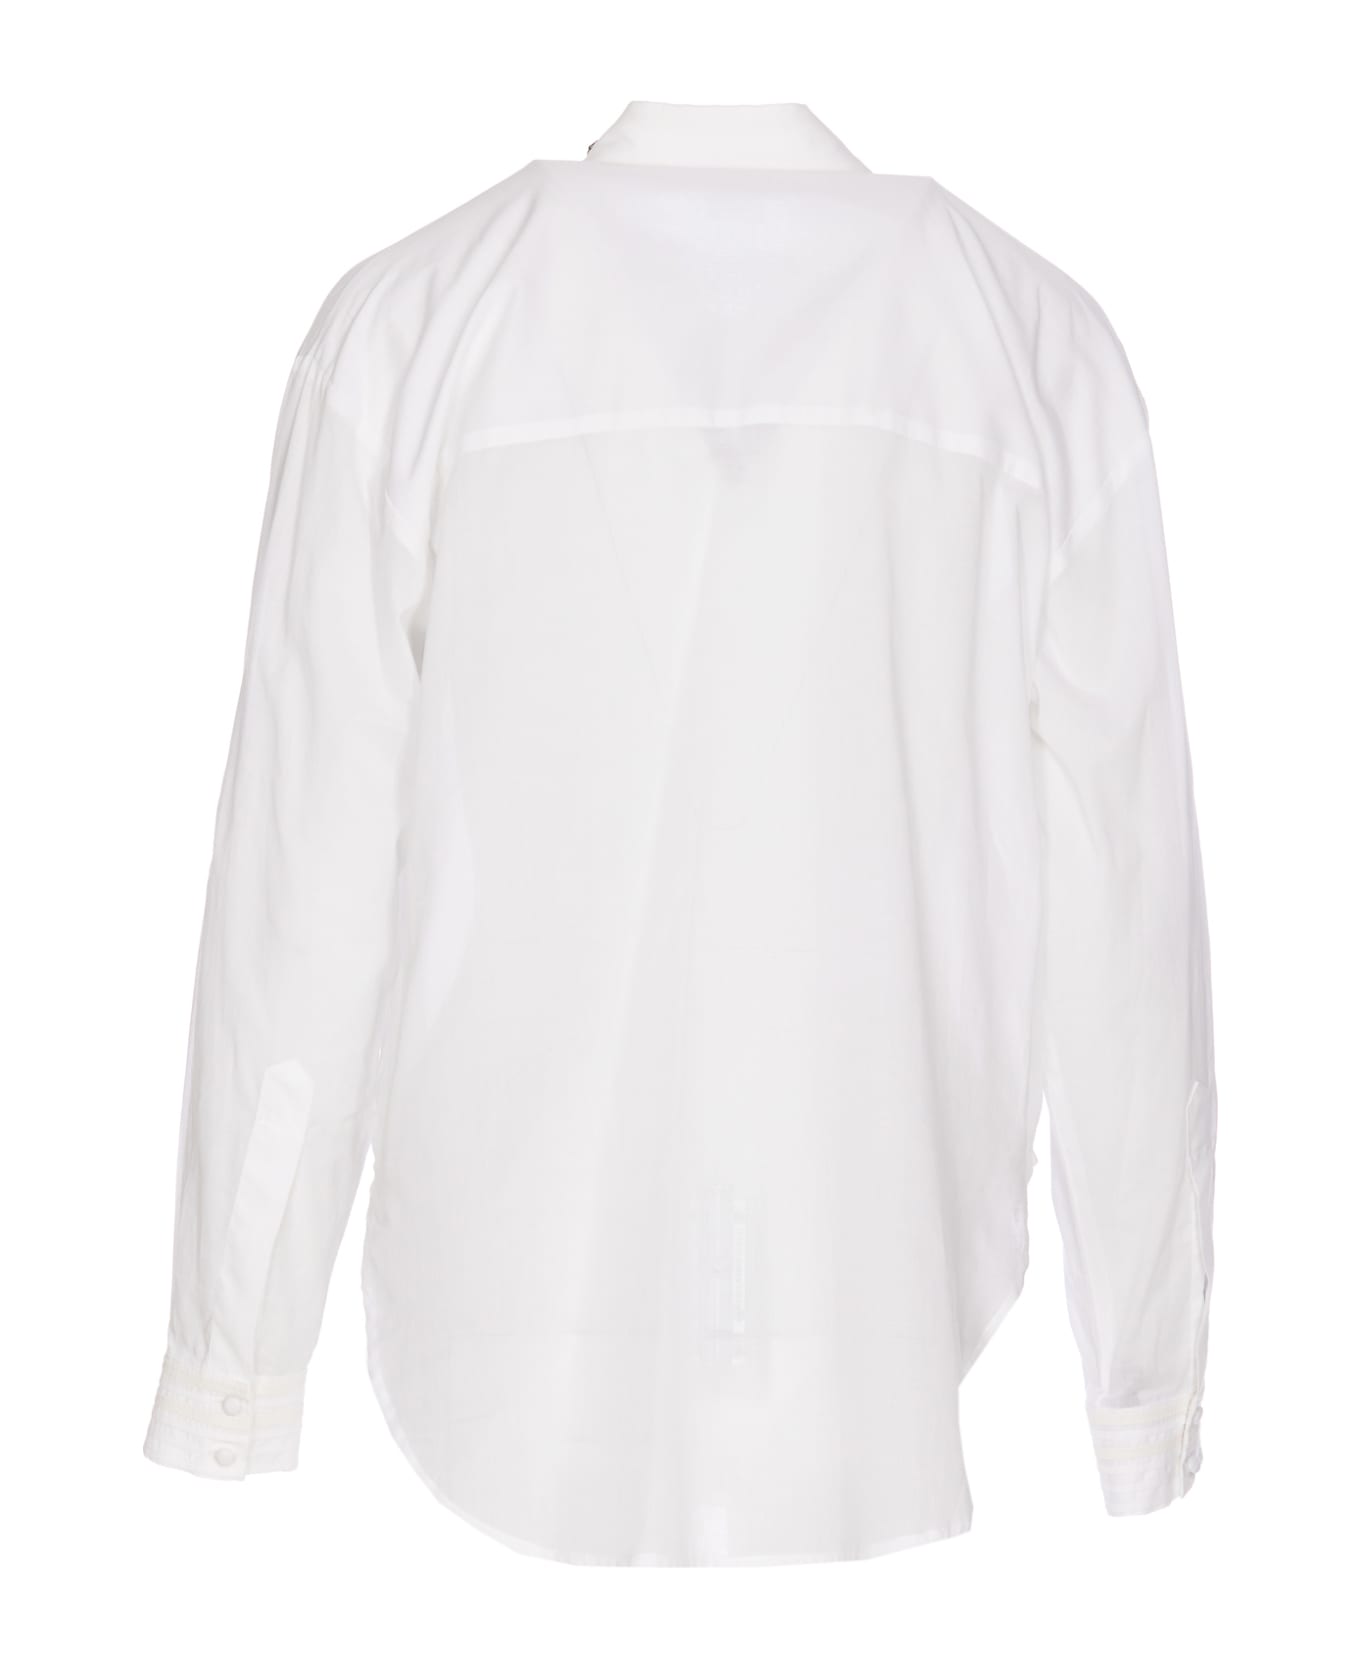 Pinko Jeweled Collar Shirt - White シャツ